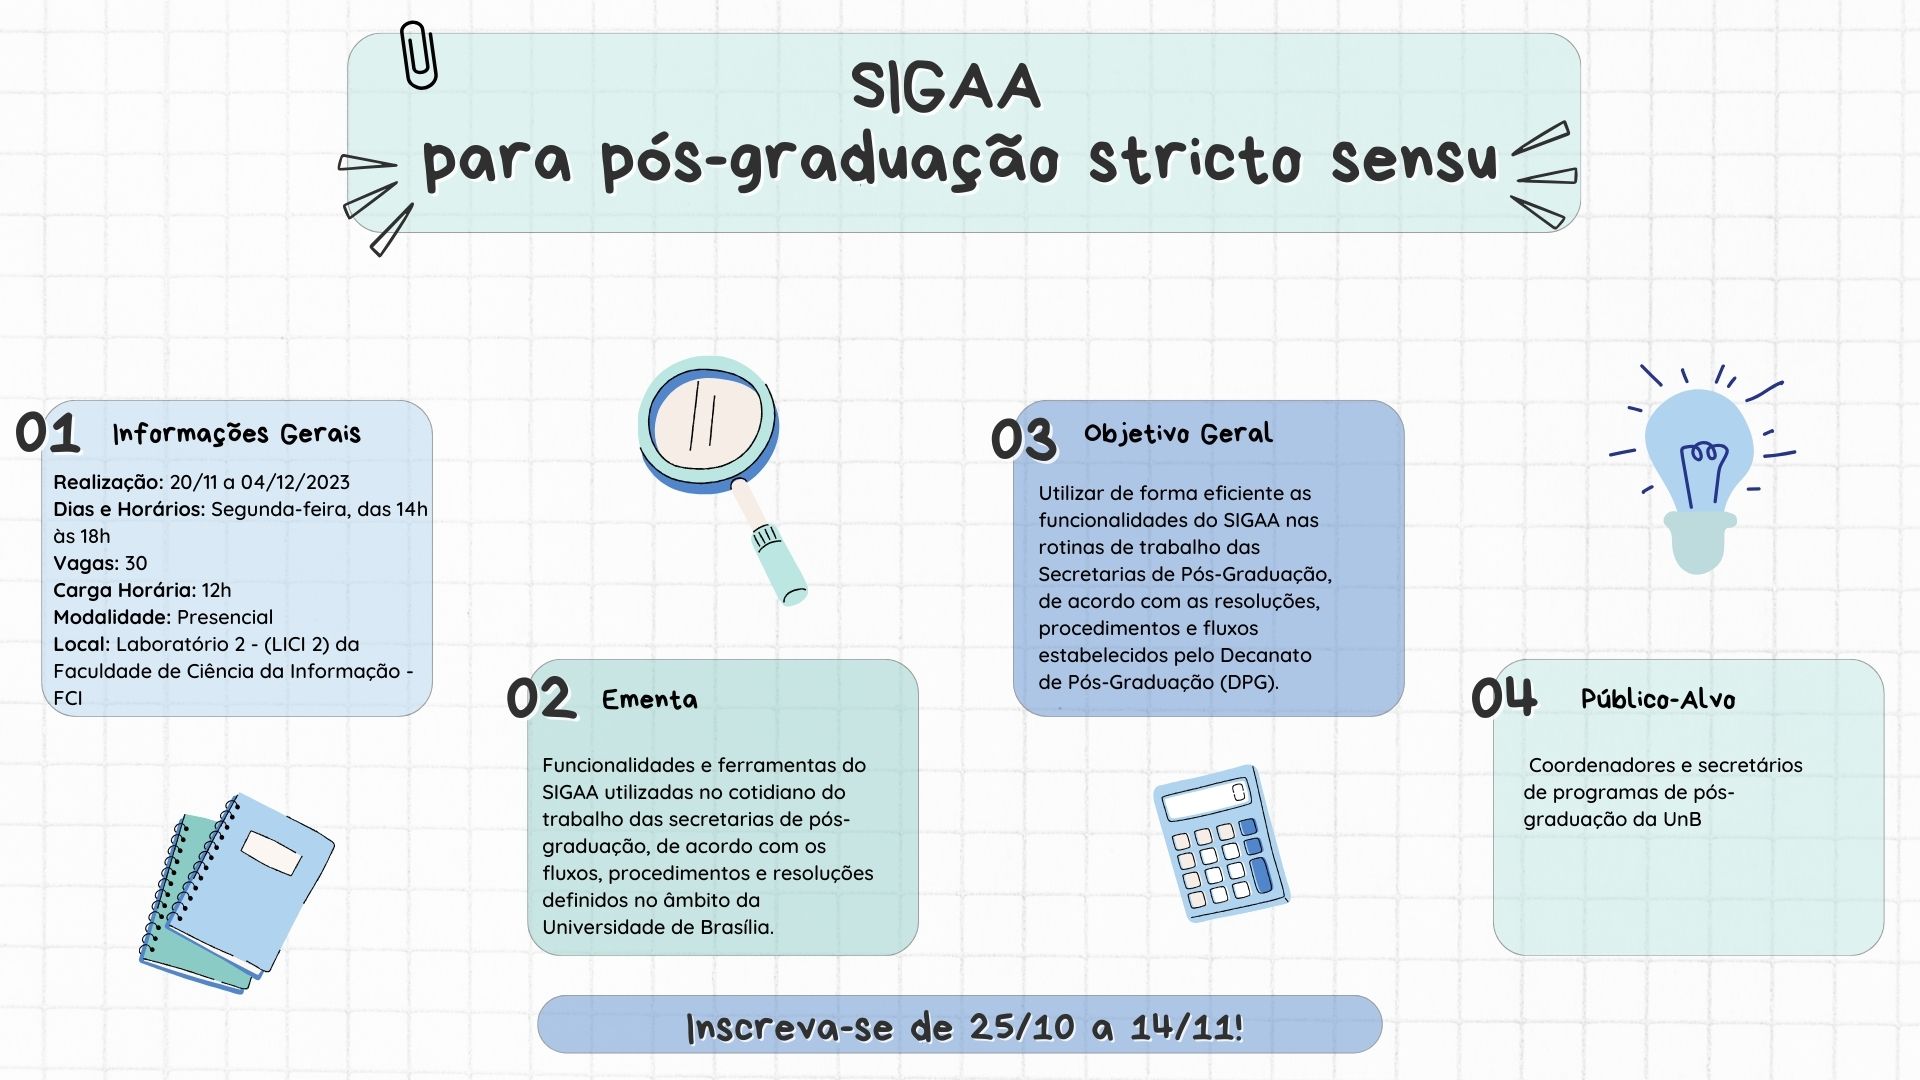 SIGAA_para_pós-graduação_stricto_sensu_Facebook.jpg